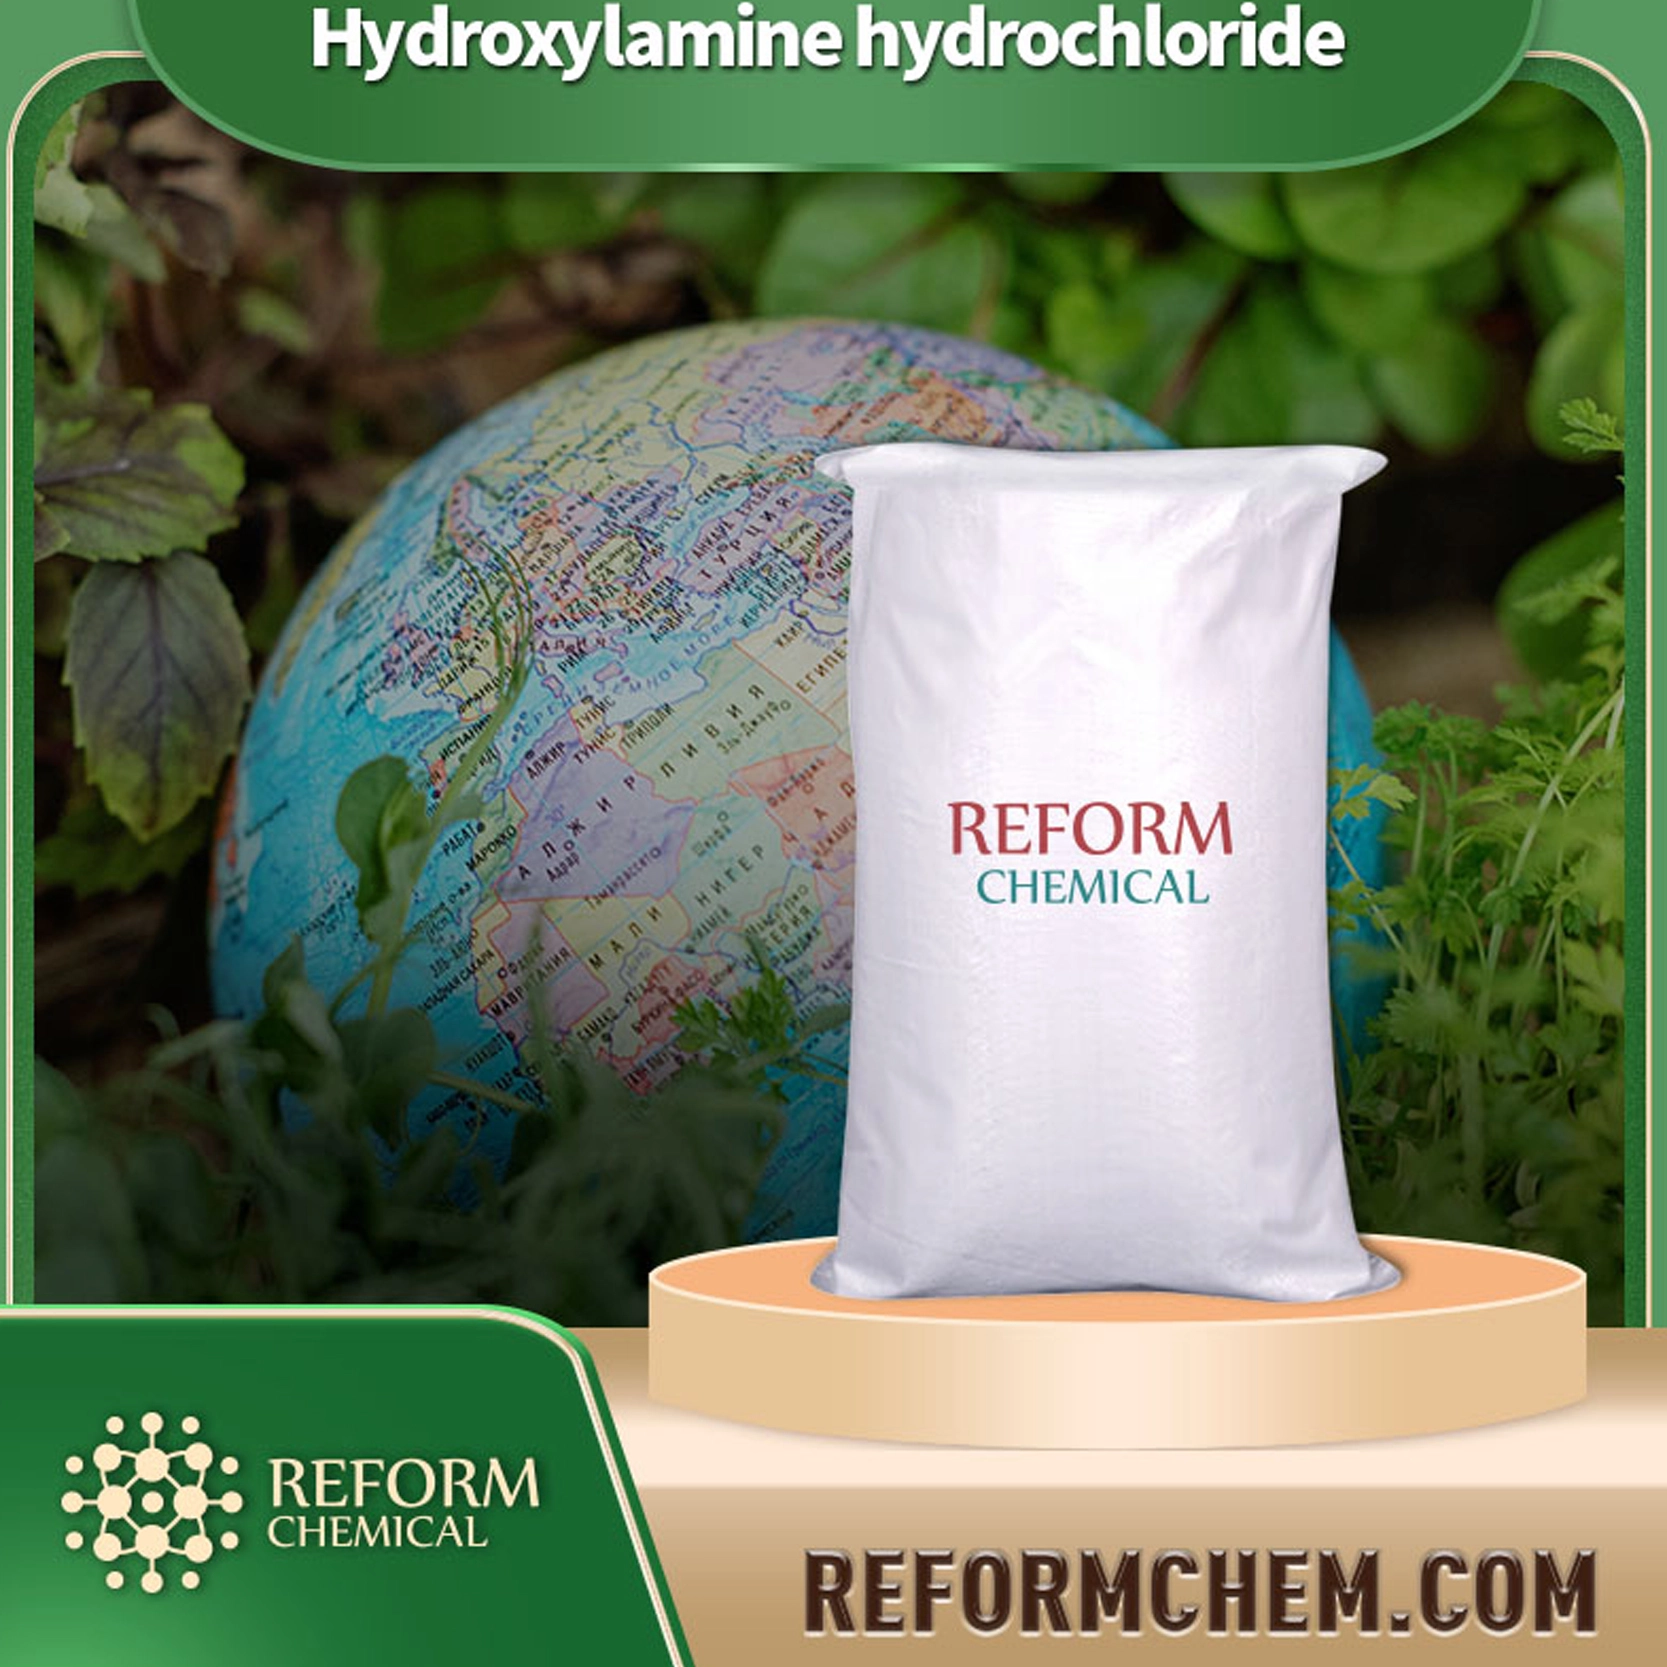 hydroxylamine hydrochloride5470 11 1